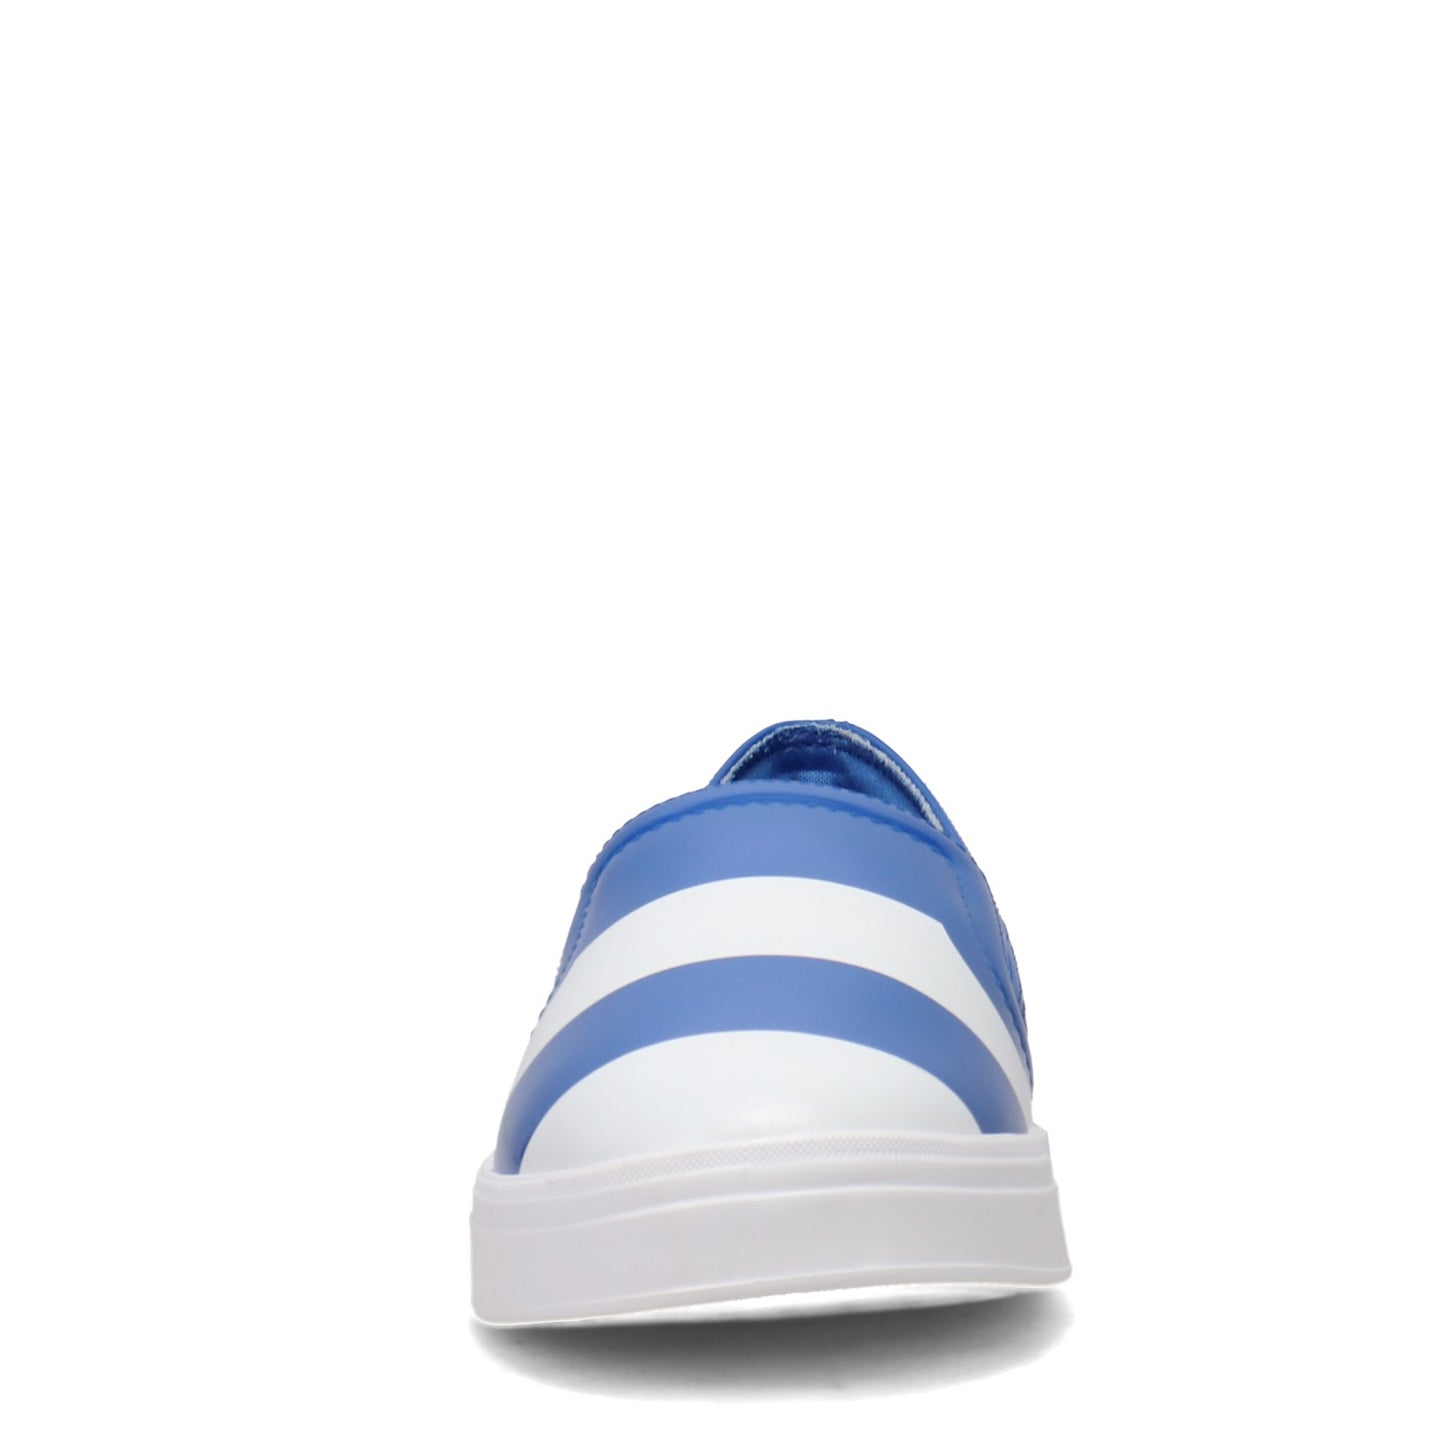 Peltz Shoes  Women's Petite Jolie Concord Slip-On BLUE PJ5509-BLUE